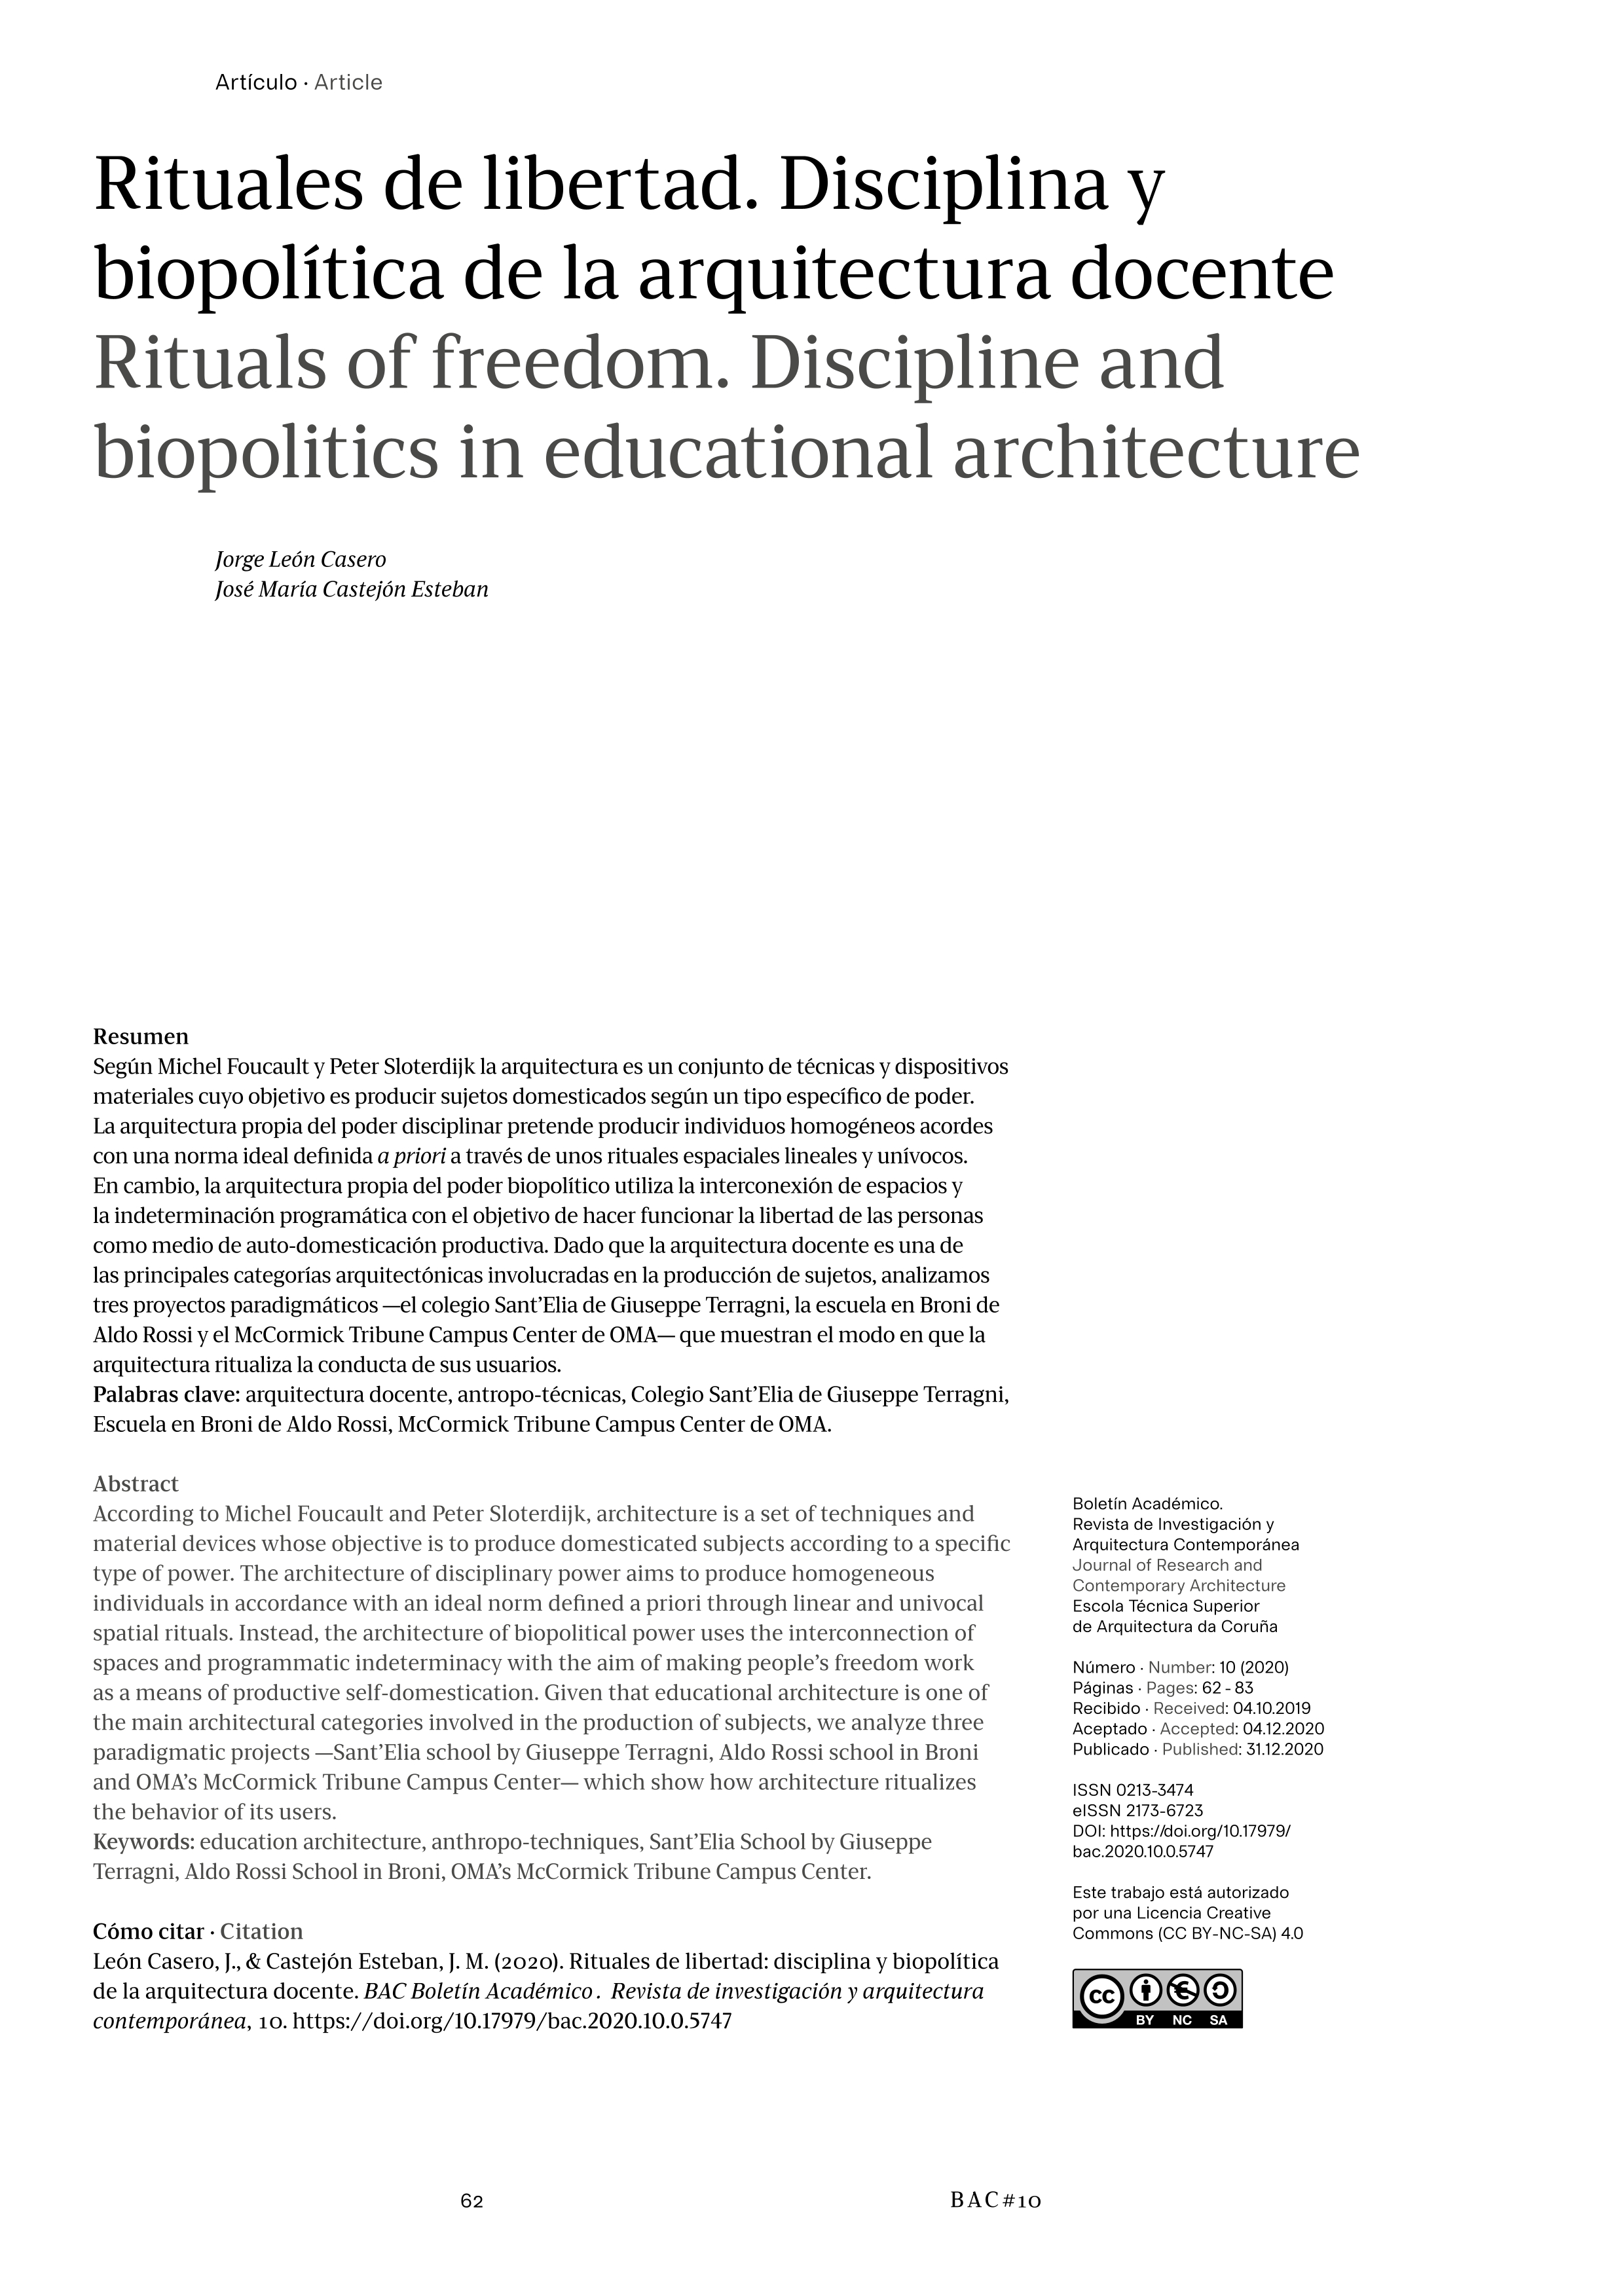 Rituales de libertad: disciplina y biopolítica de la arquitectura docente [Rituals of freedom. Discipline and biopolitics in educational architecture]